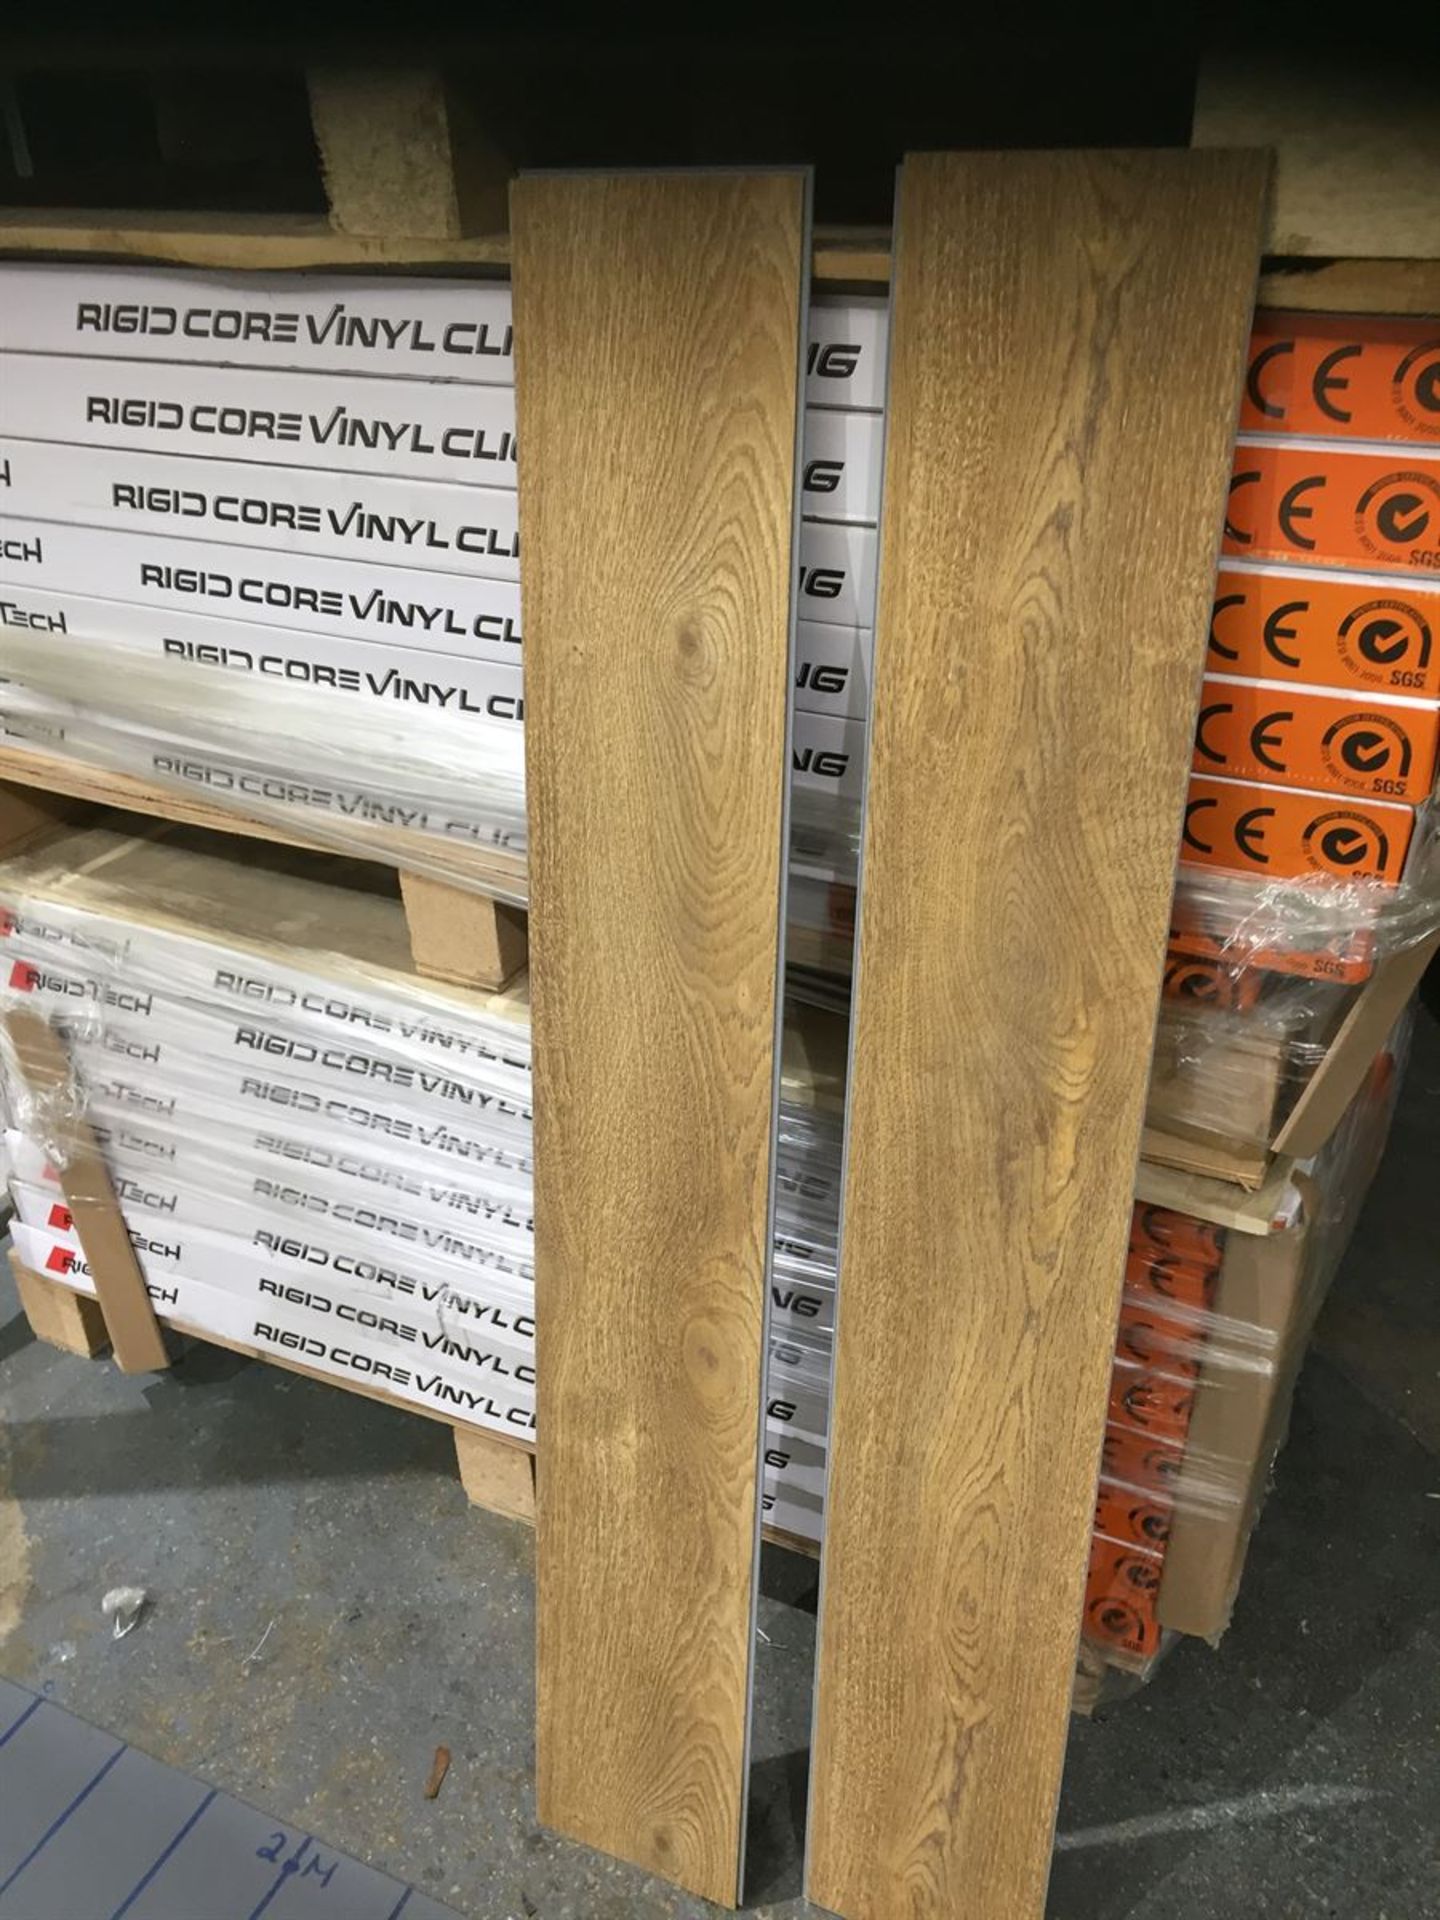 20m2 Pro Line commercial grade rigid core vinyl click Flooring Colour Natural Oak - Image 2 of 2